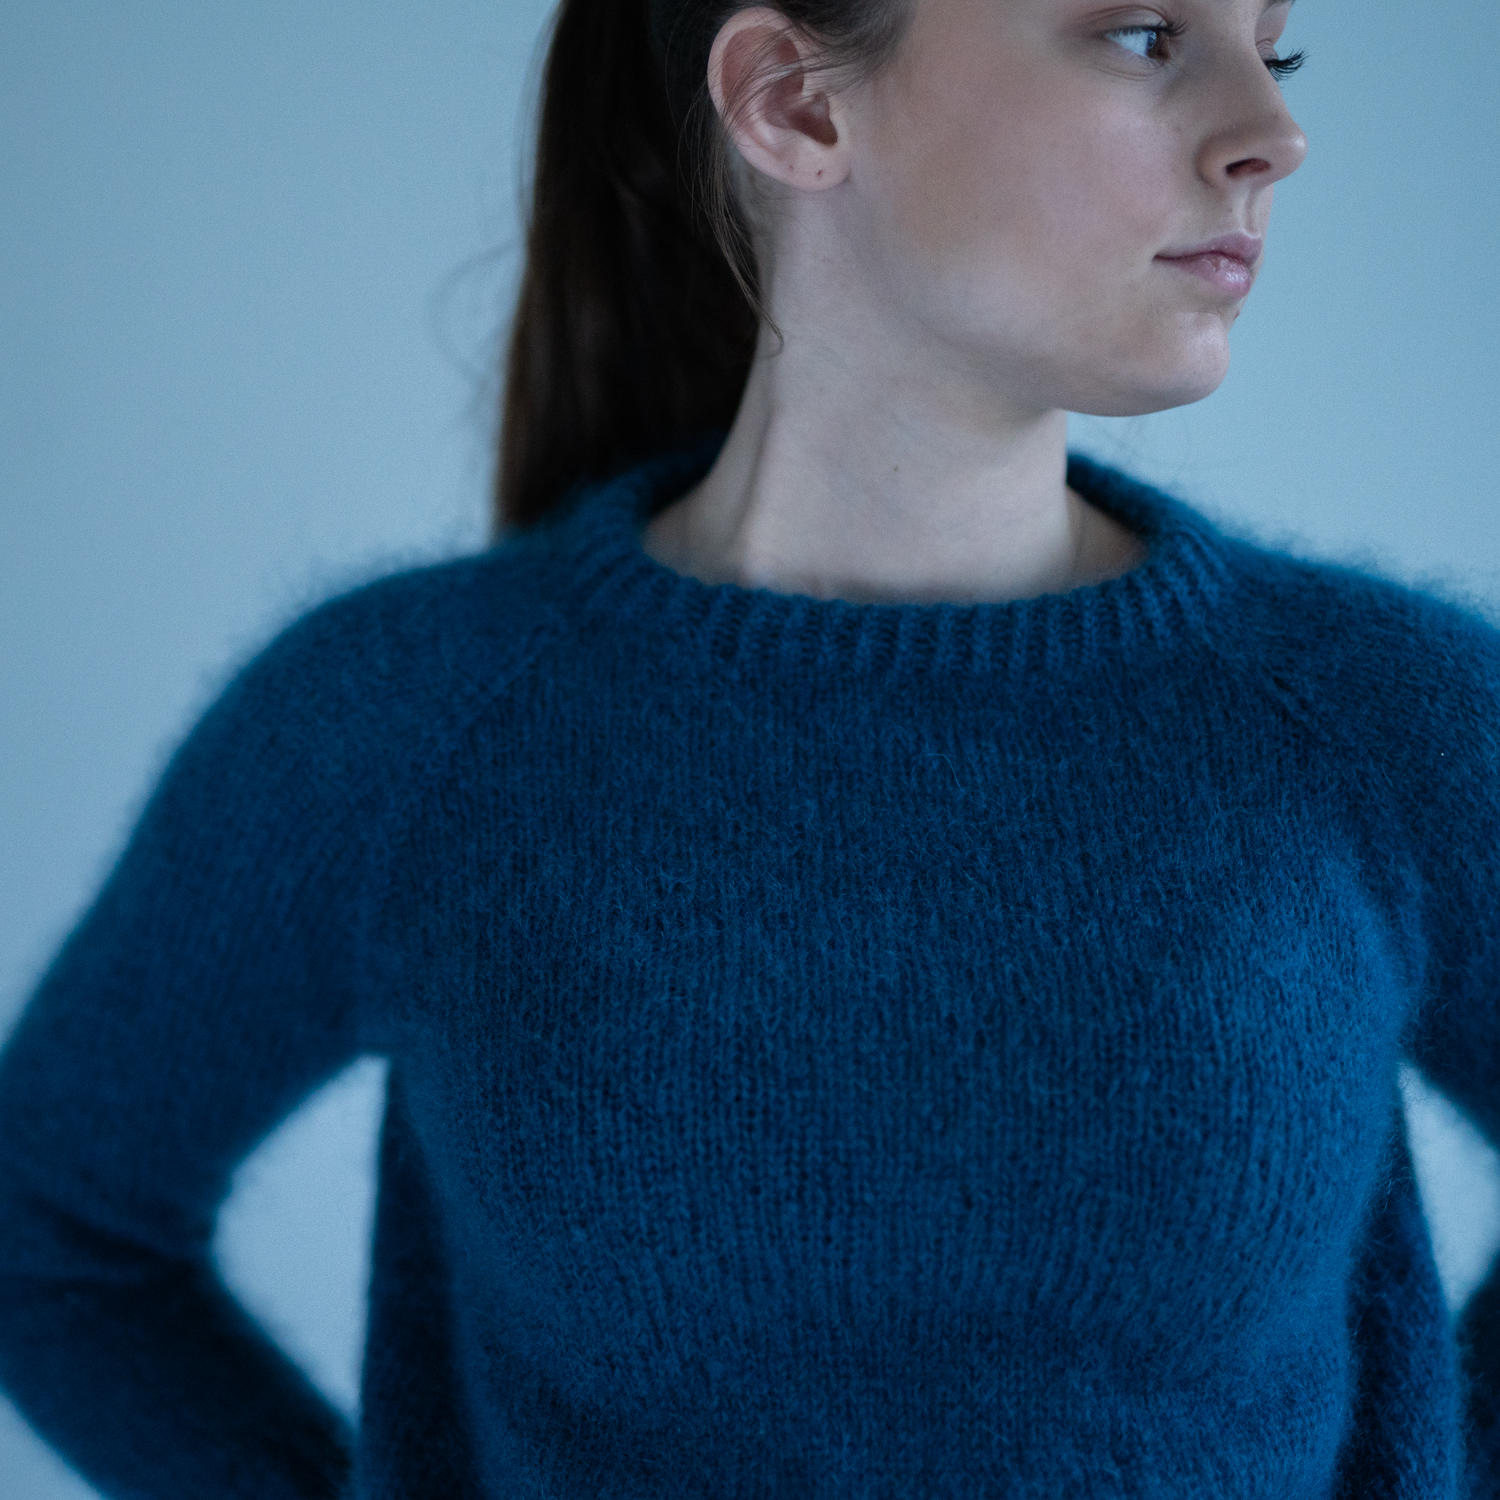  - Eben Sweater | Basic sweater women knitting kit - by HipKnitShop - 29/06/2018